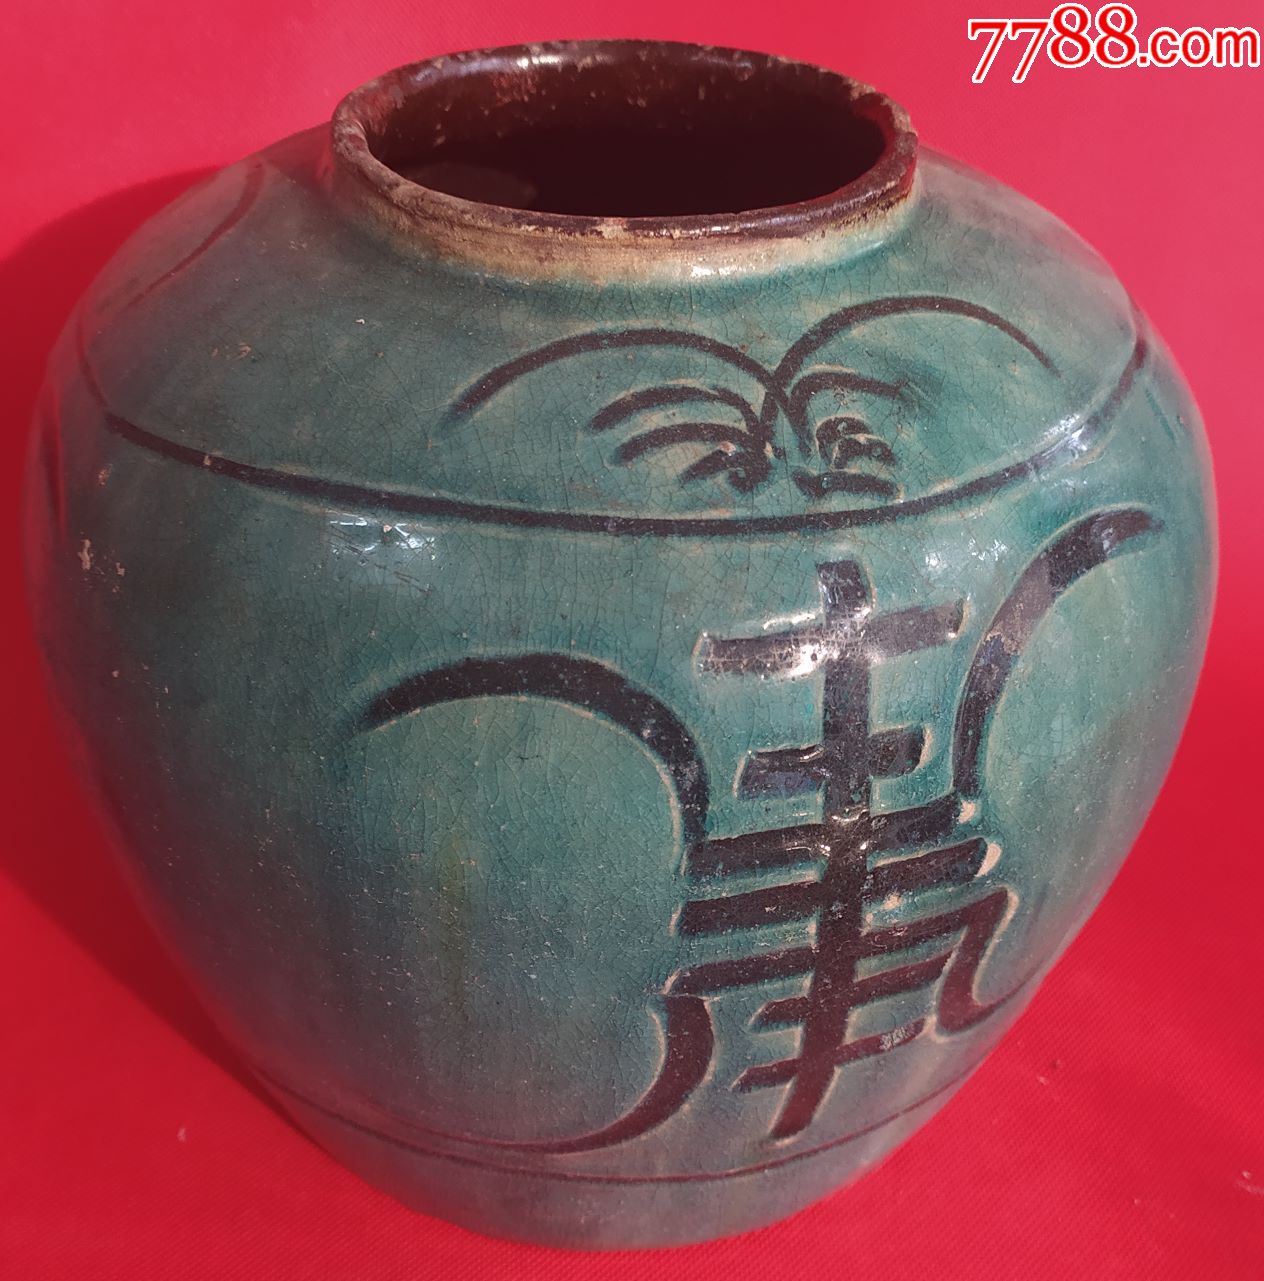 寿字纹老绿釉陶罐高198cm三方可见寿字纹